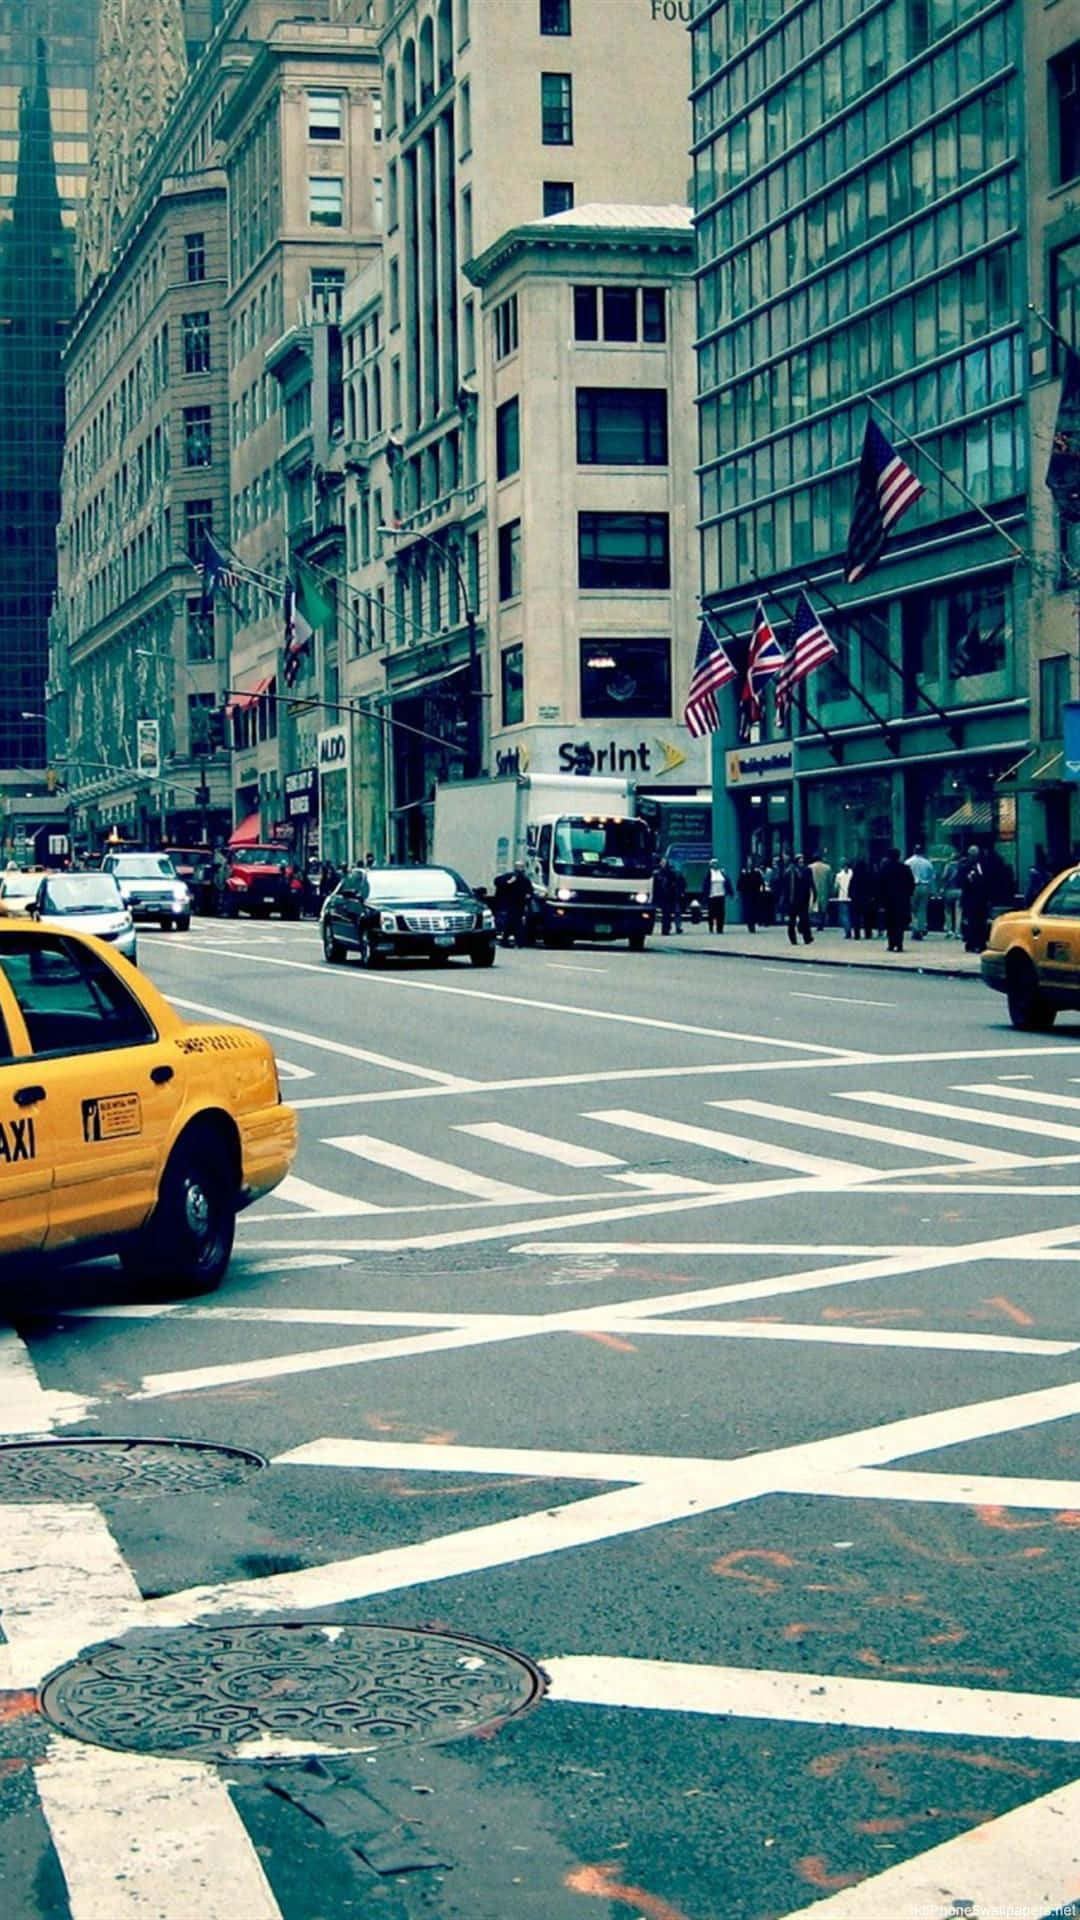 En gul taxa kører ned ad en gade. Wallpaper